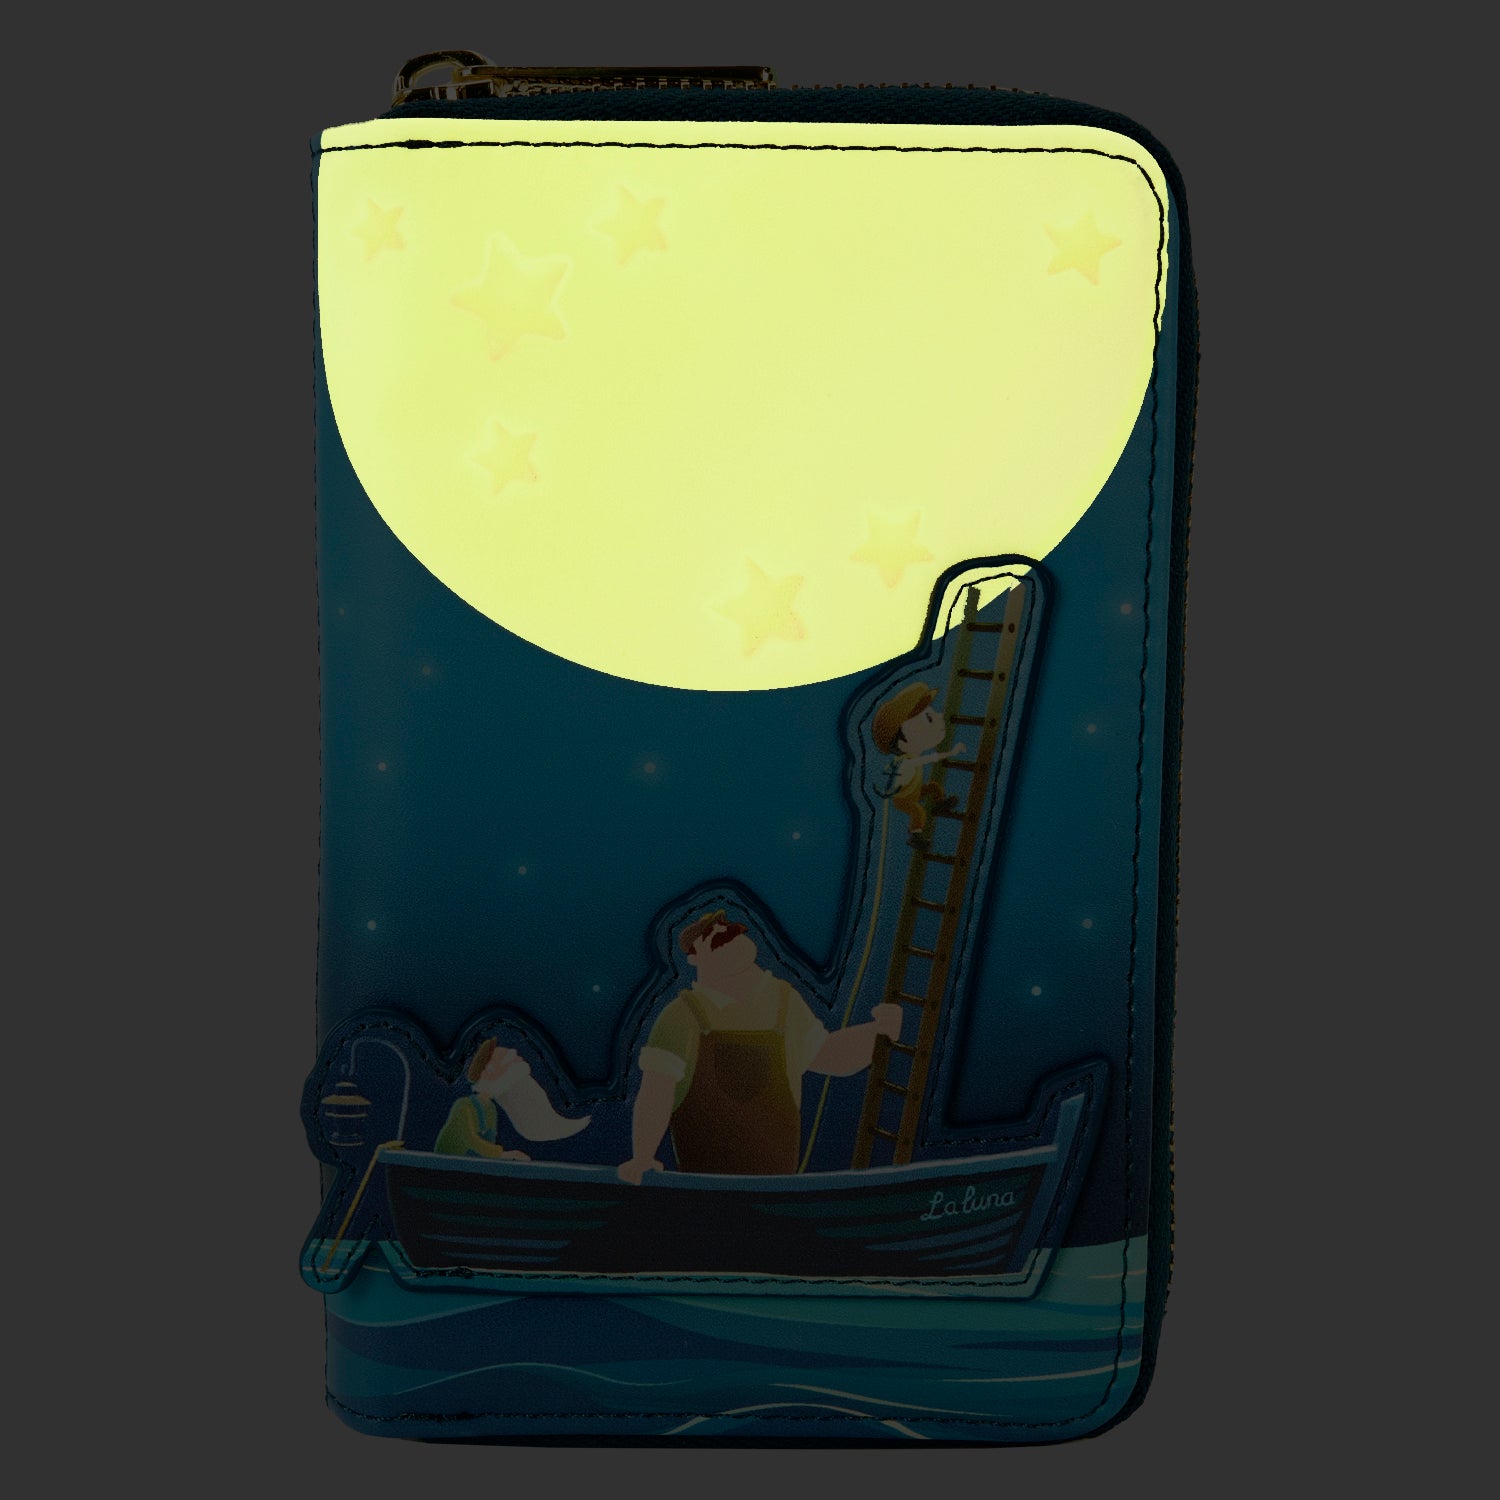 Loungefly Pixar La Luna Glow Zip Around Wallet